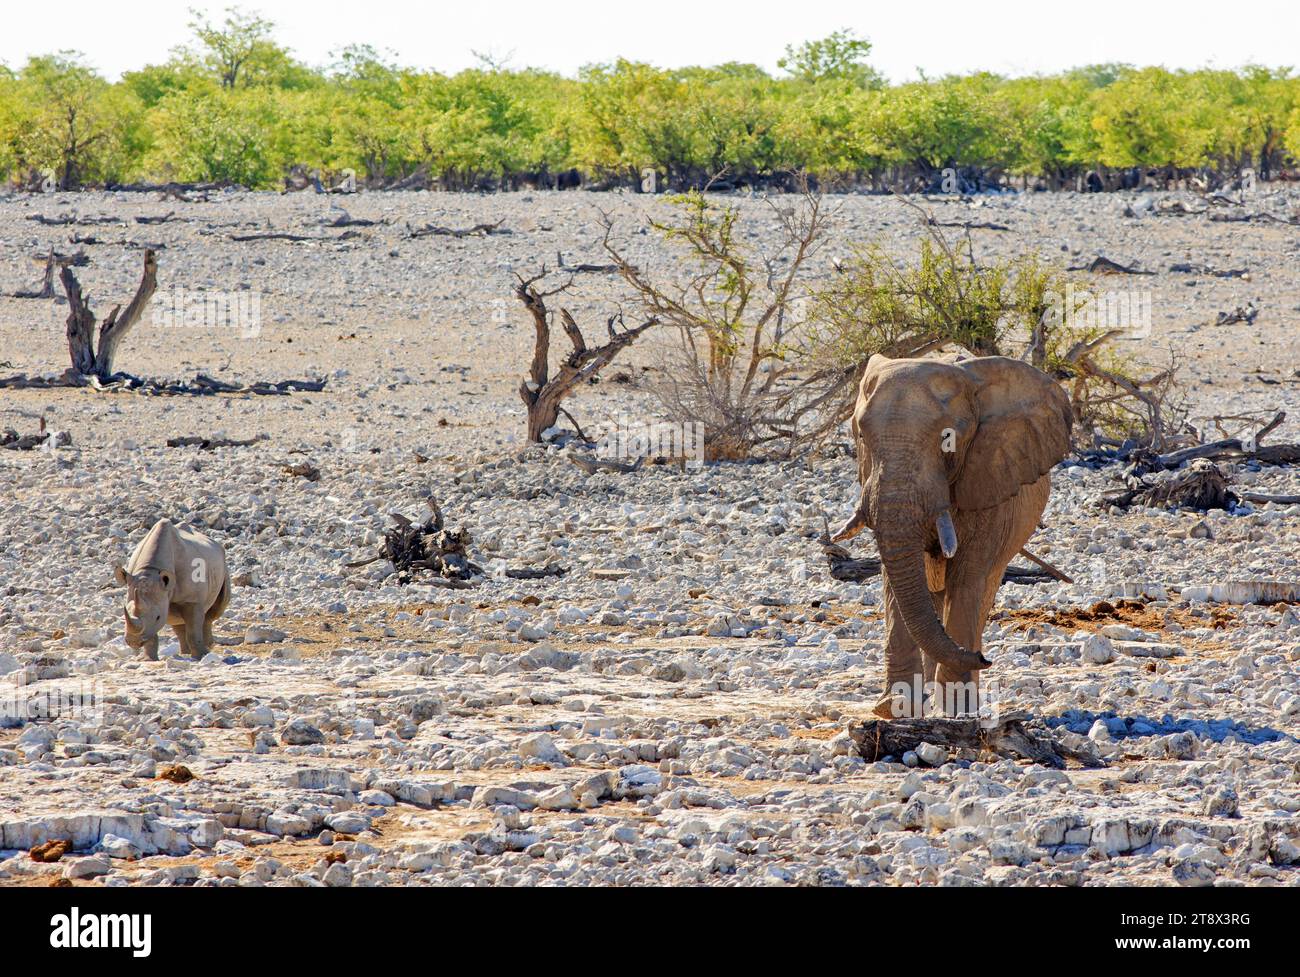 Ein großer afrikanischer Elefant und ein schwarzes Nashorn, der in der Nähe des Etosha National Park, Namibia, spazieren geht - Hitzeschleim ist sichtbar Stockfoto